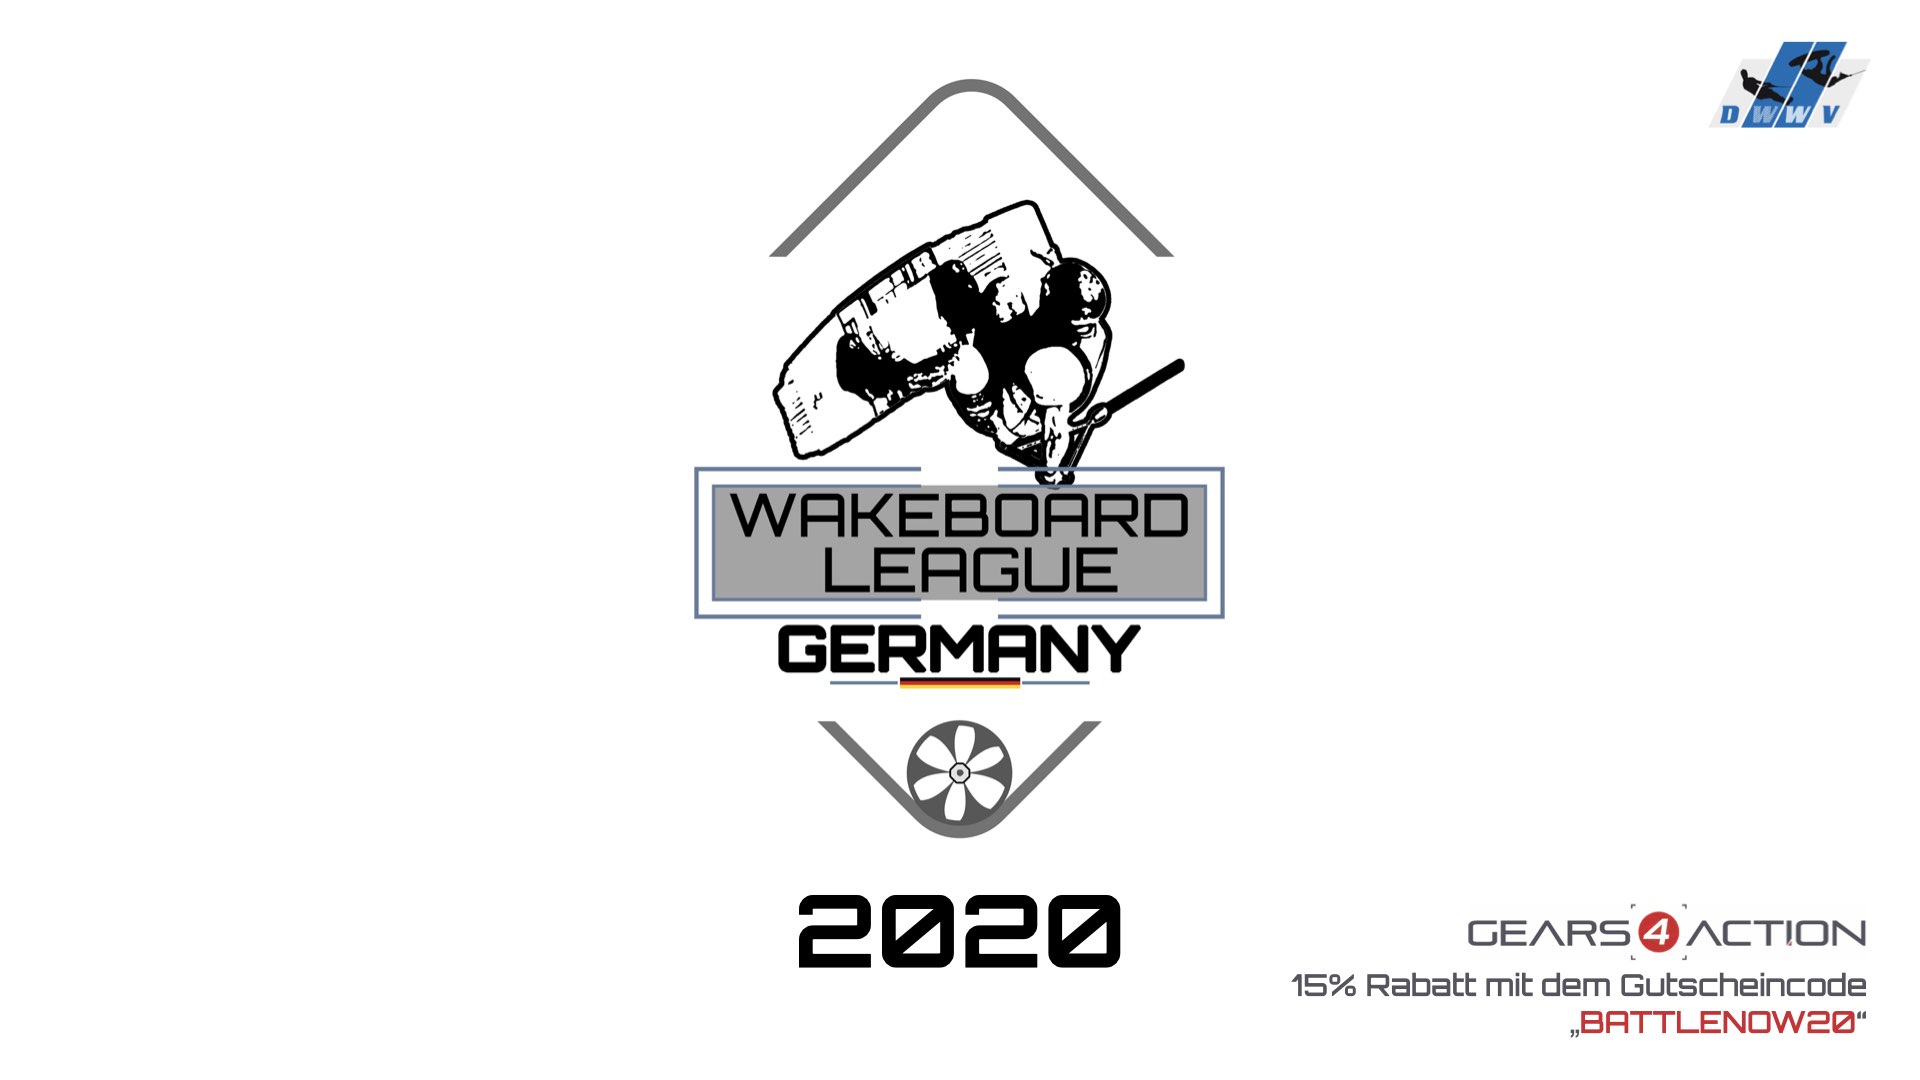 DWWV Wakeboard League Germany - Battle 6 - Best Kicker BS 180